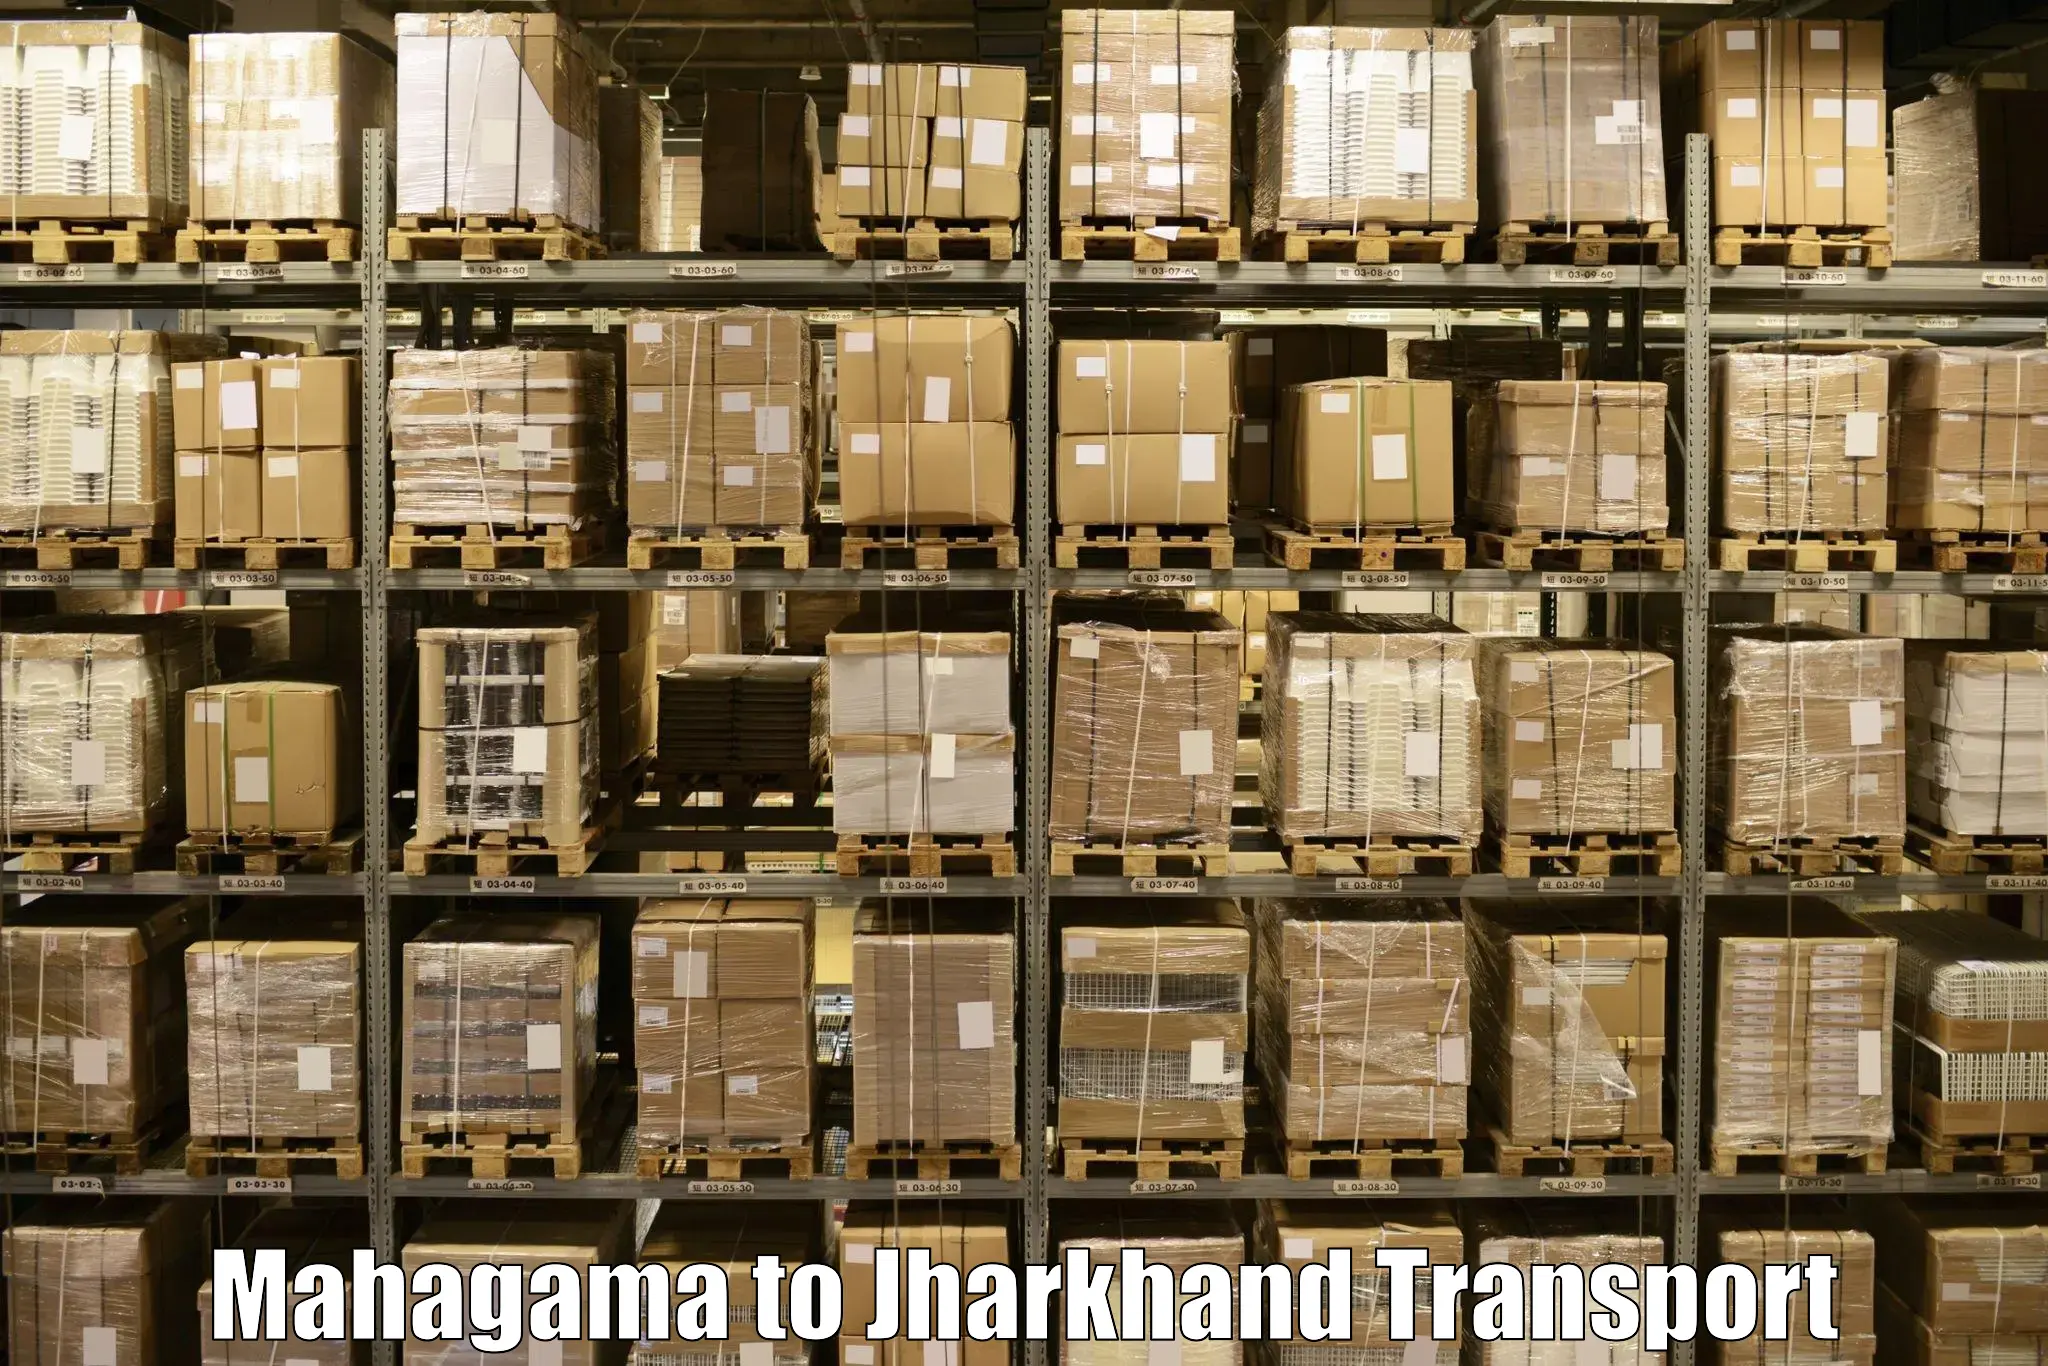 Daily transport service Mahagama to Hazaribagh